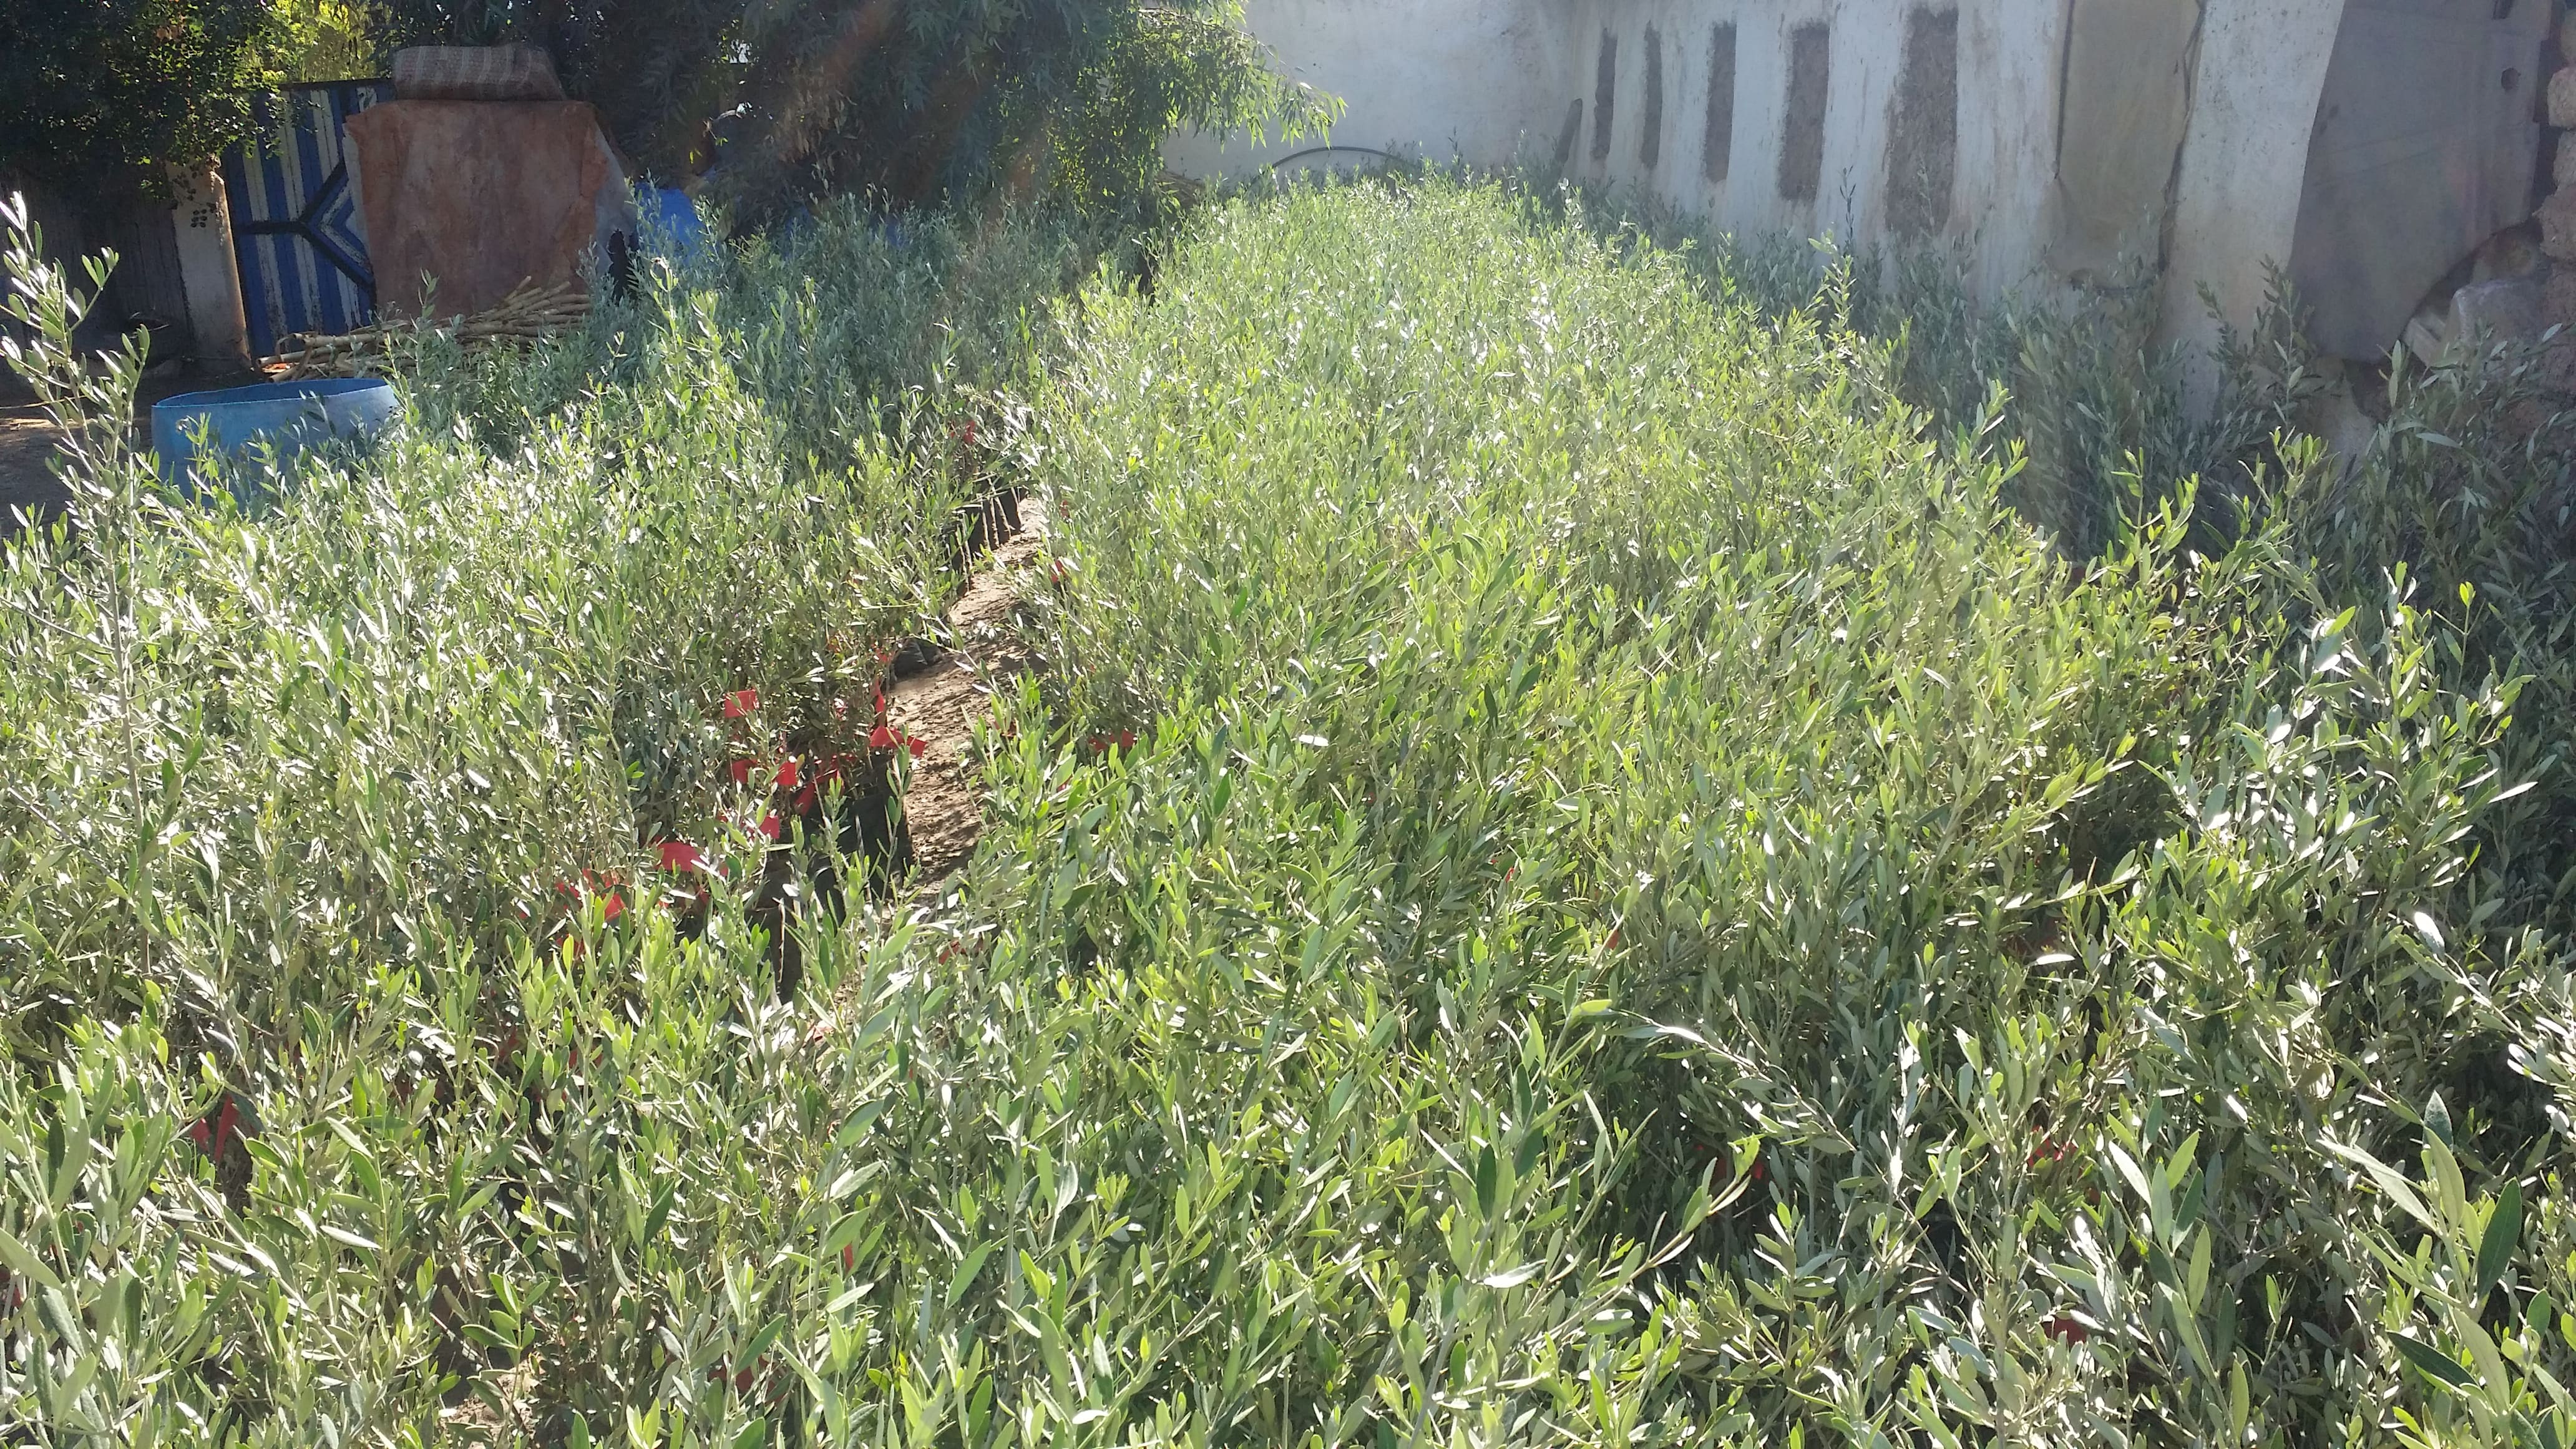 Travaux de plantation d’olivier sur une superficie de 2000 HA au niveau des communes rurales d’Ouled Khallof, Oued Lkhdar, Sor Al Az, Sidi rahal (Afiad) et Zemrane gharbia (Takhyart), Province d’Elkelaa des Sraghna